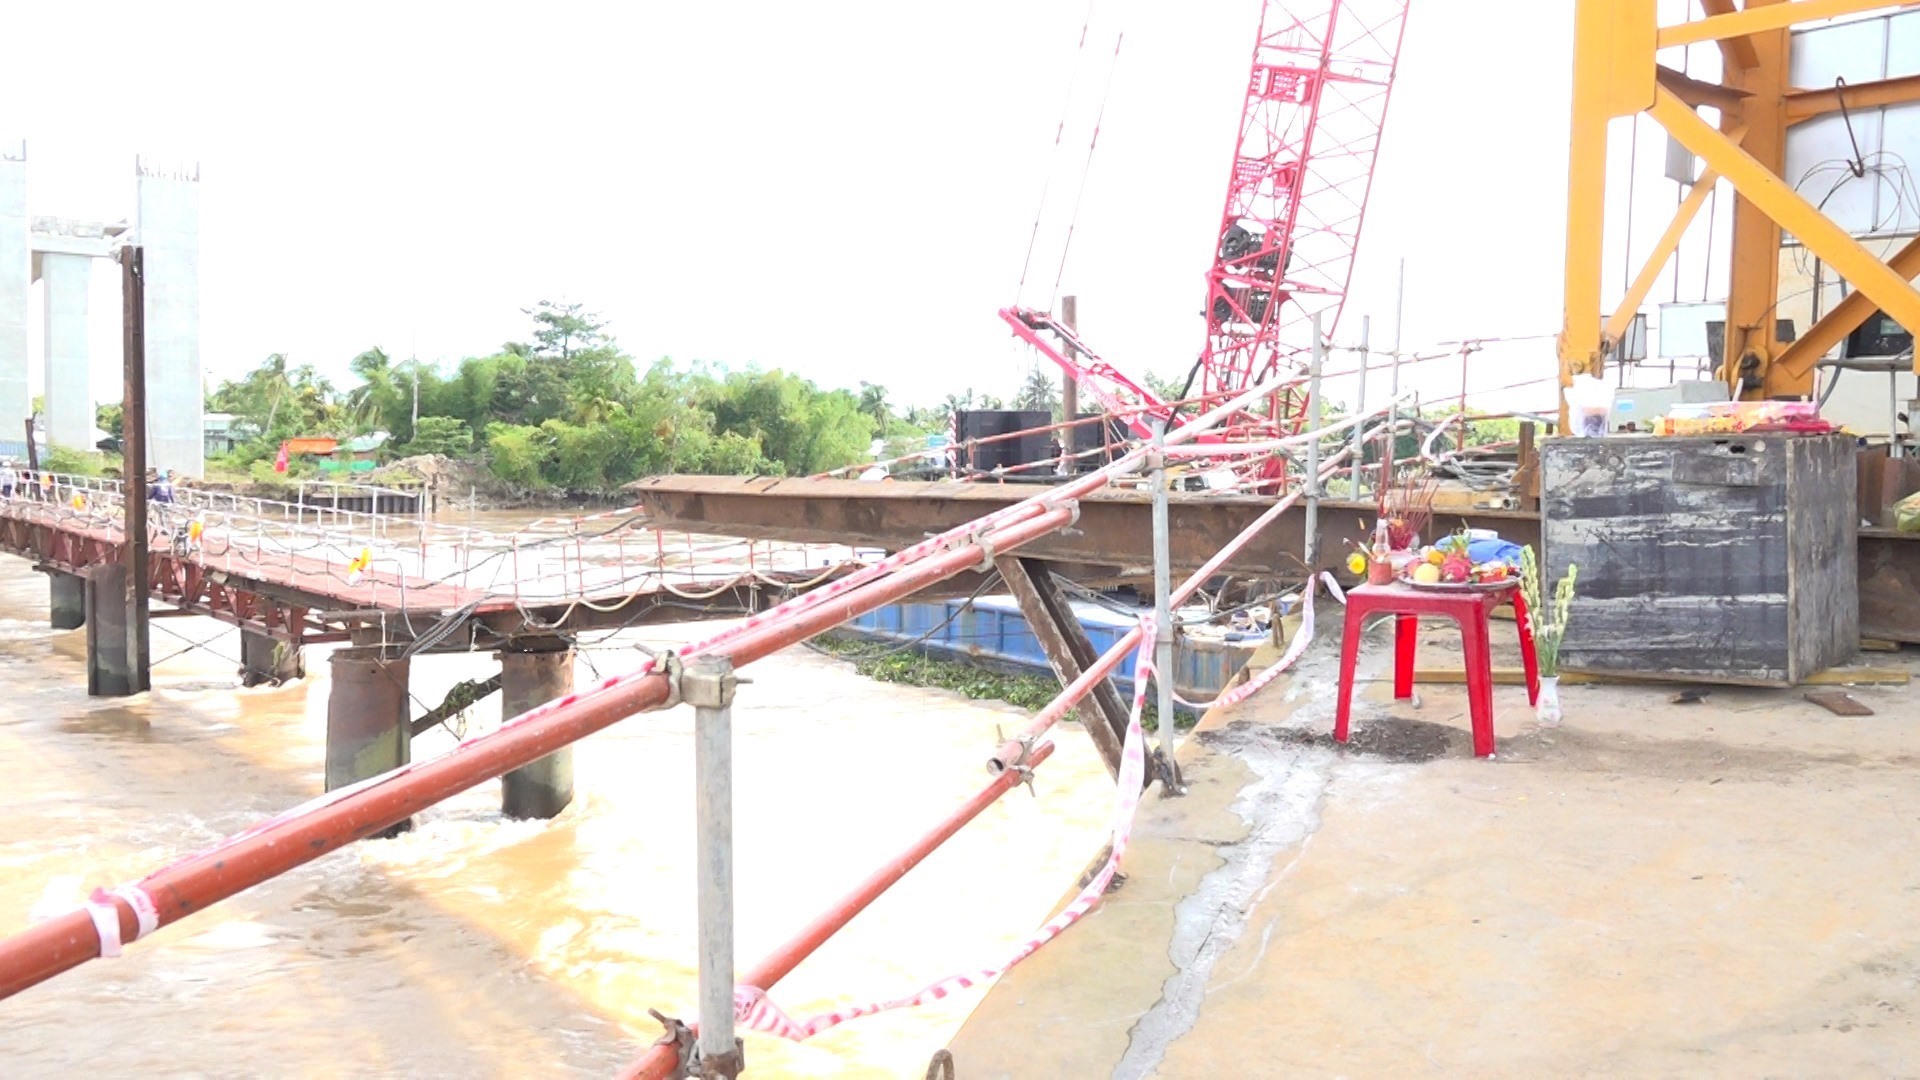 Tiếp tục giám định vụ tai nạn lao động chết người ở cầu Mỹ Thuận 2-1